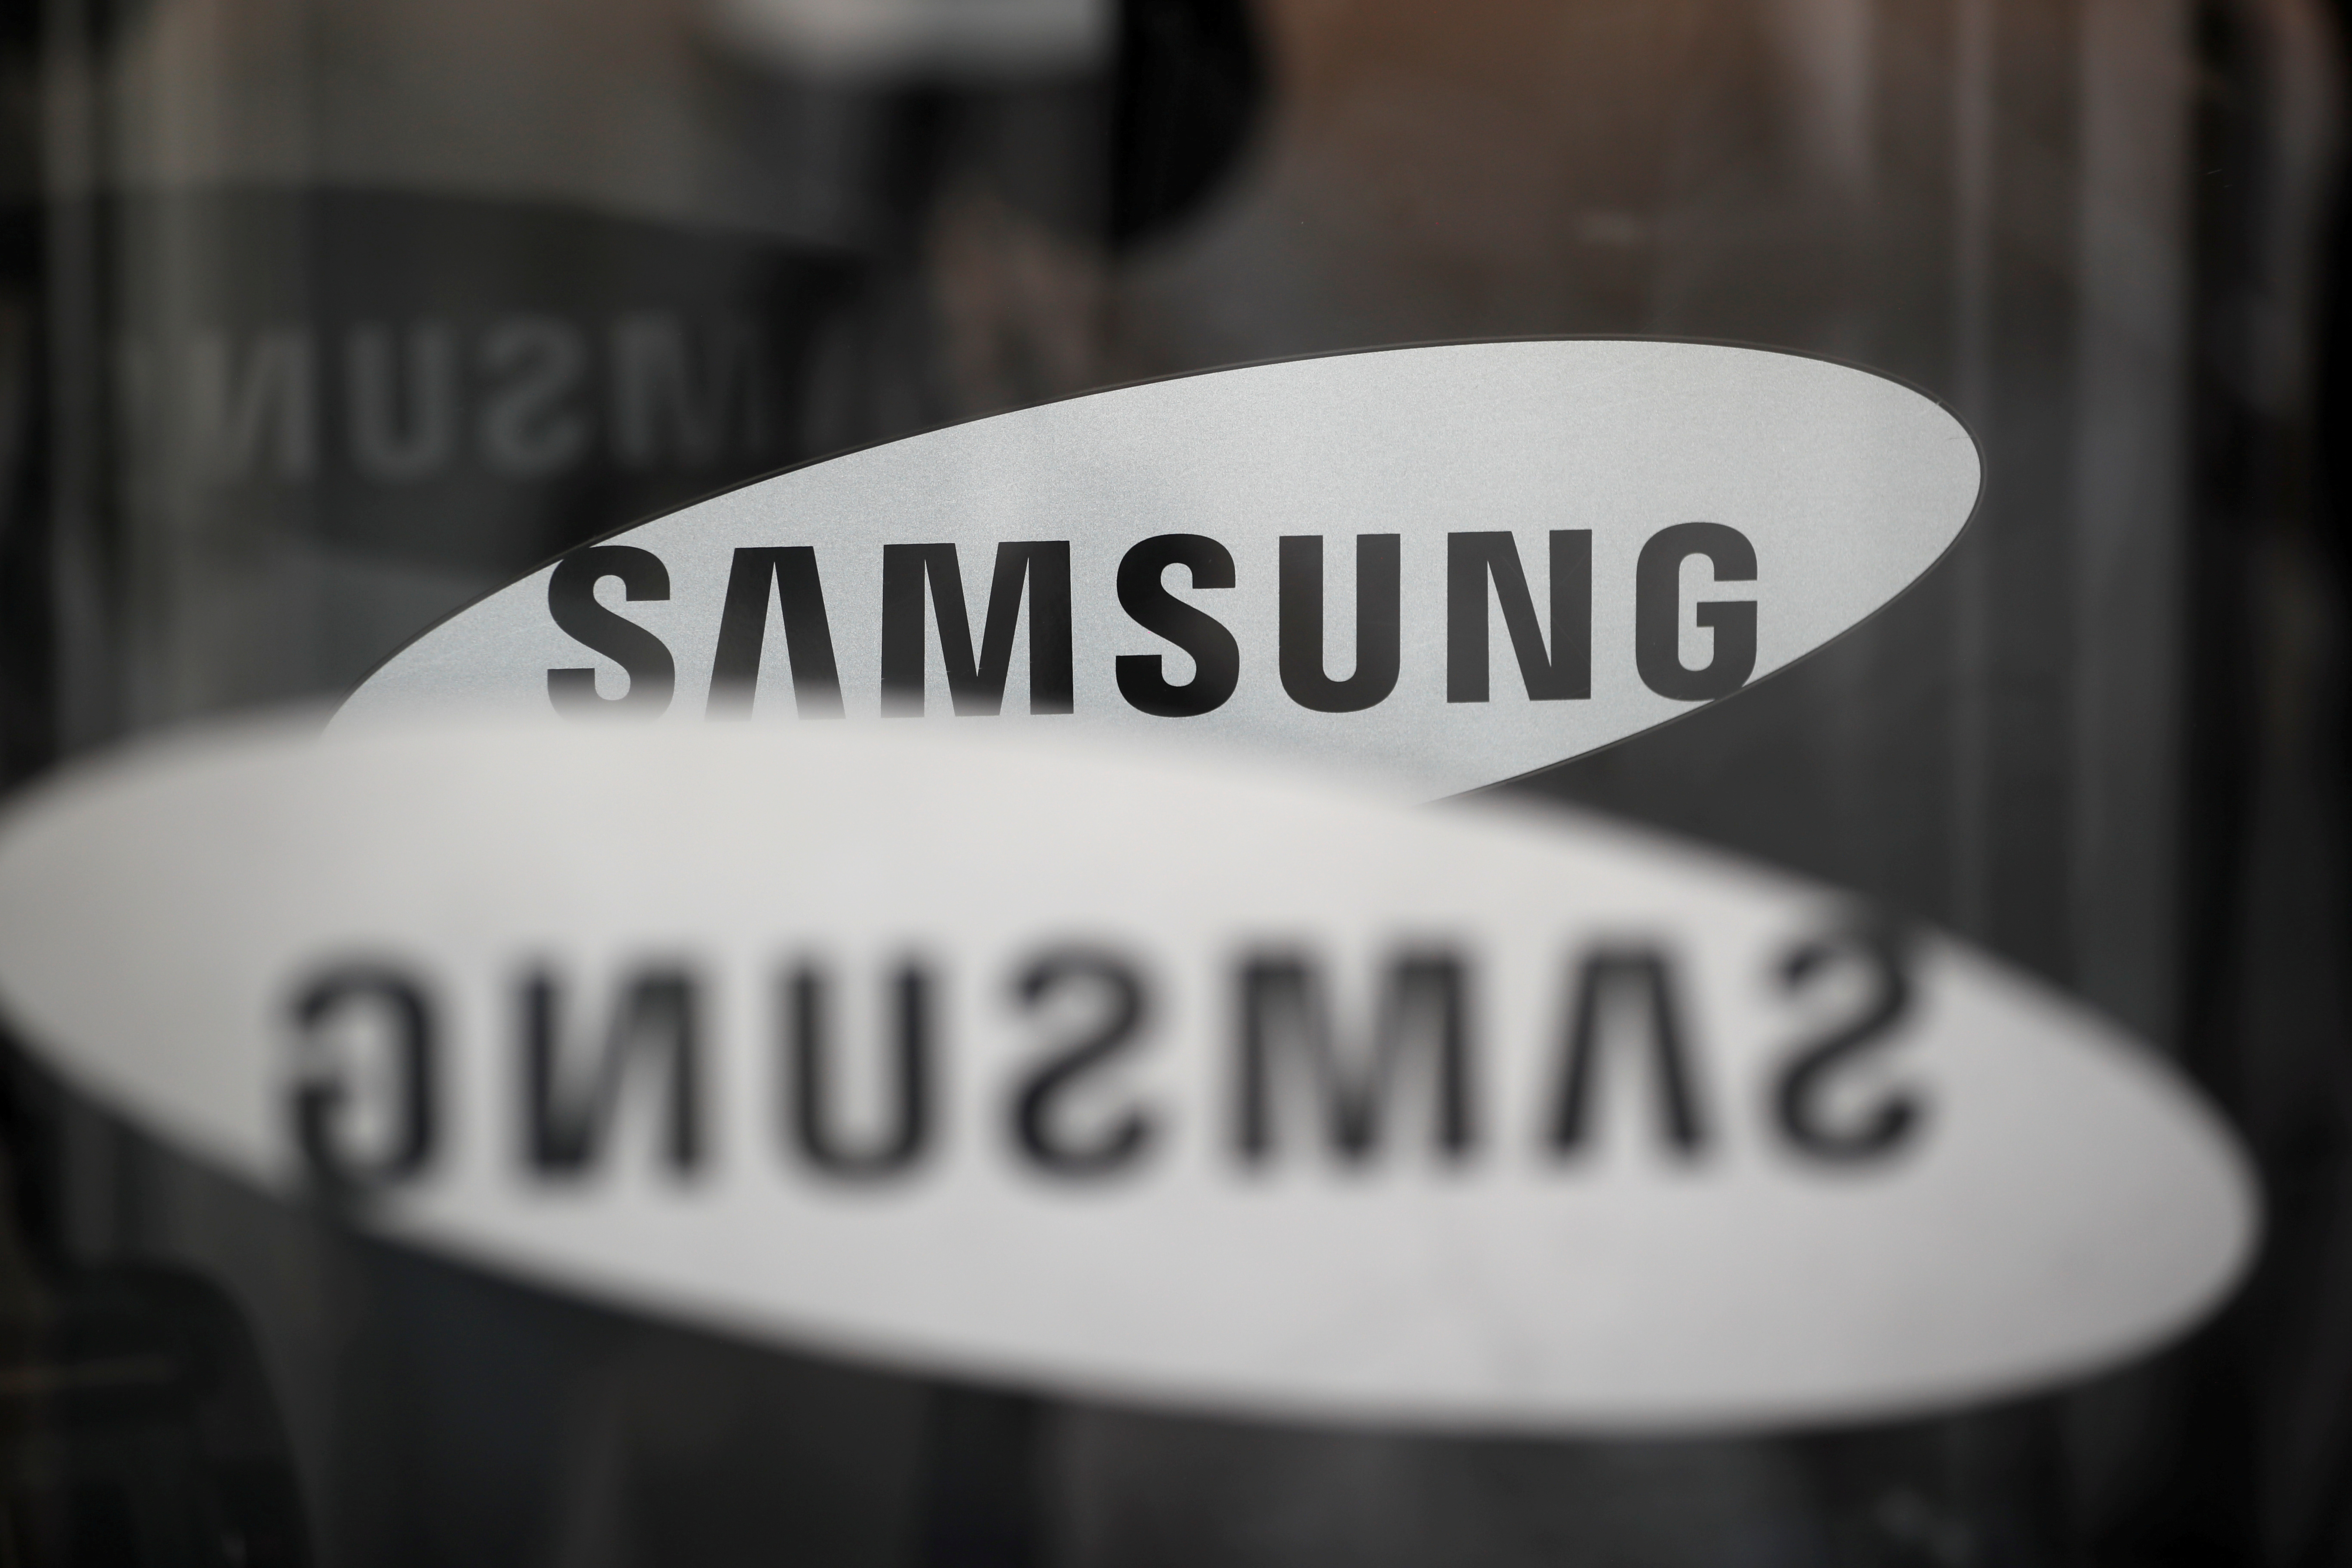 Νότια Κορέα: Ο επικεφαλής της Samsung έλαβε προεδρική χάρη για τα σκάνδαλα διαφθοράς και κατάχρησης κεφαλαίων